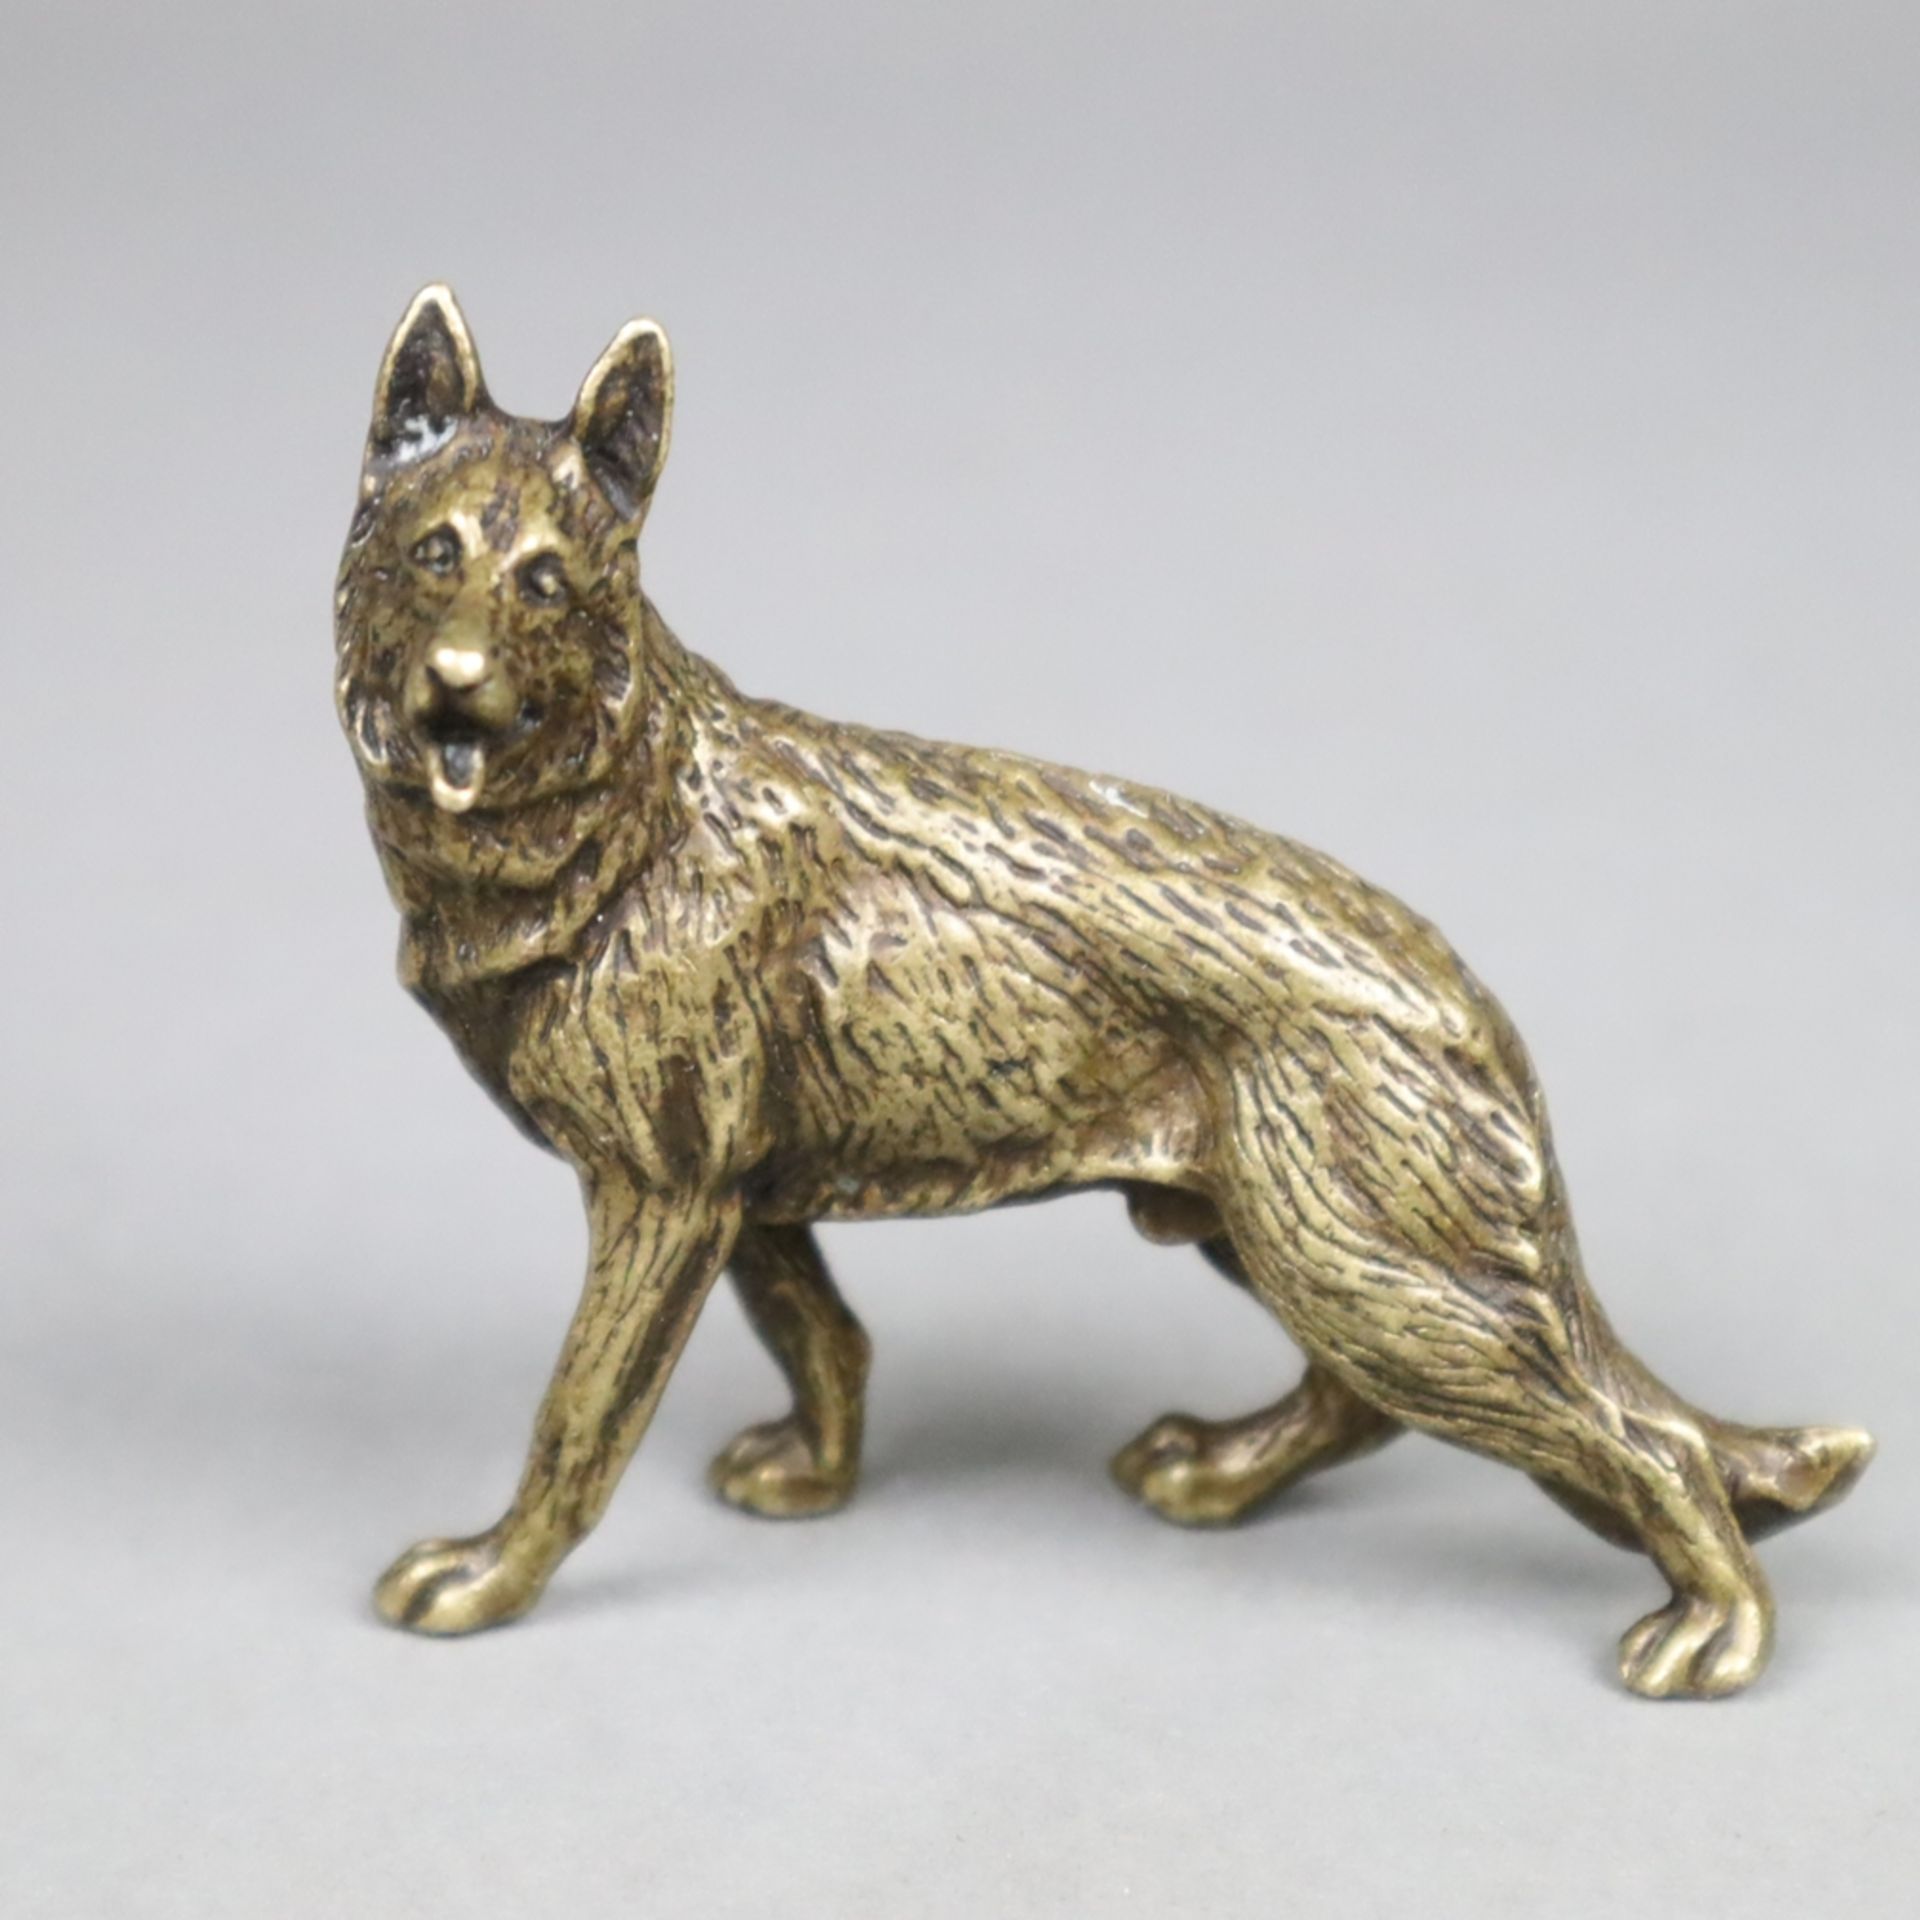 Tierplastik Schäferhund - wohl um 1900, Bronze, patiniert, vollplastische natur